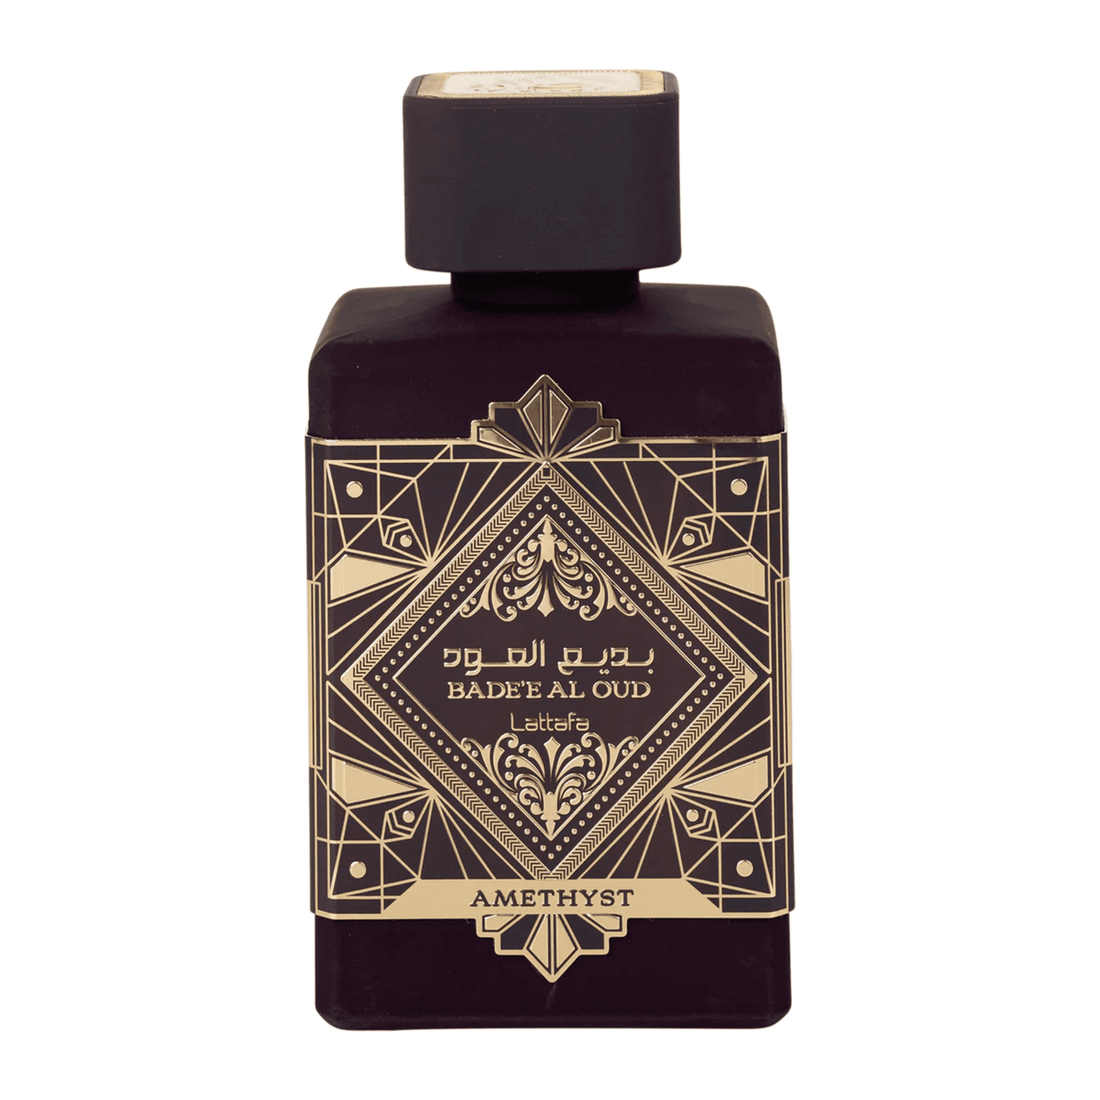 Image of Bade’e Al Oud Amethyst perfume bottle by Lattafa